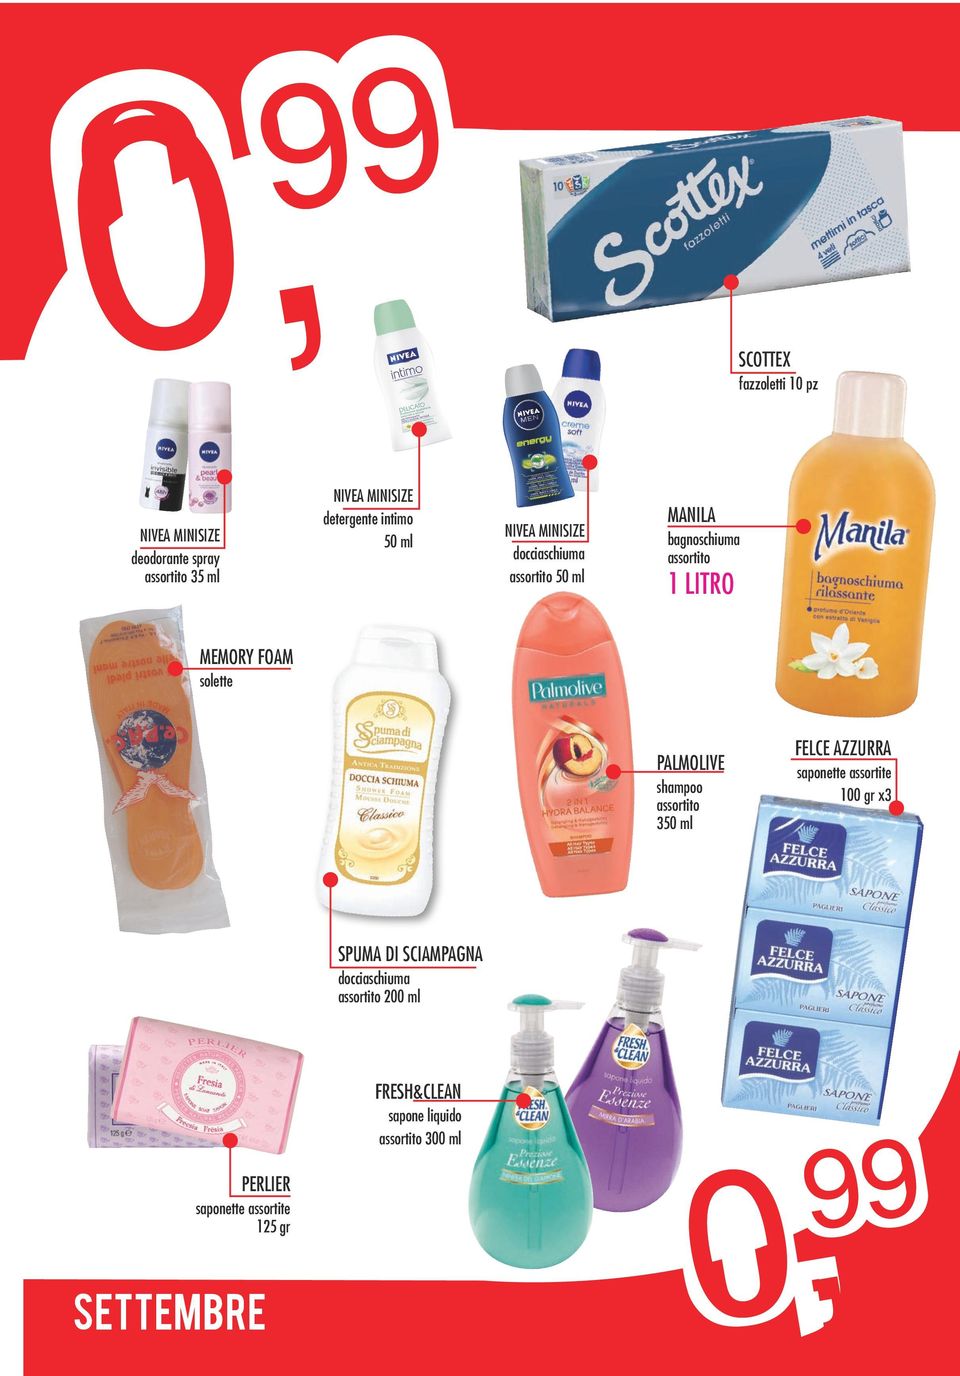 solette PALMOLIVE shampoo 350 ml FELCE AZZURRA saponette assortite 100 gr x3 SPUMA DI